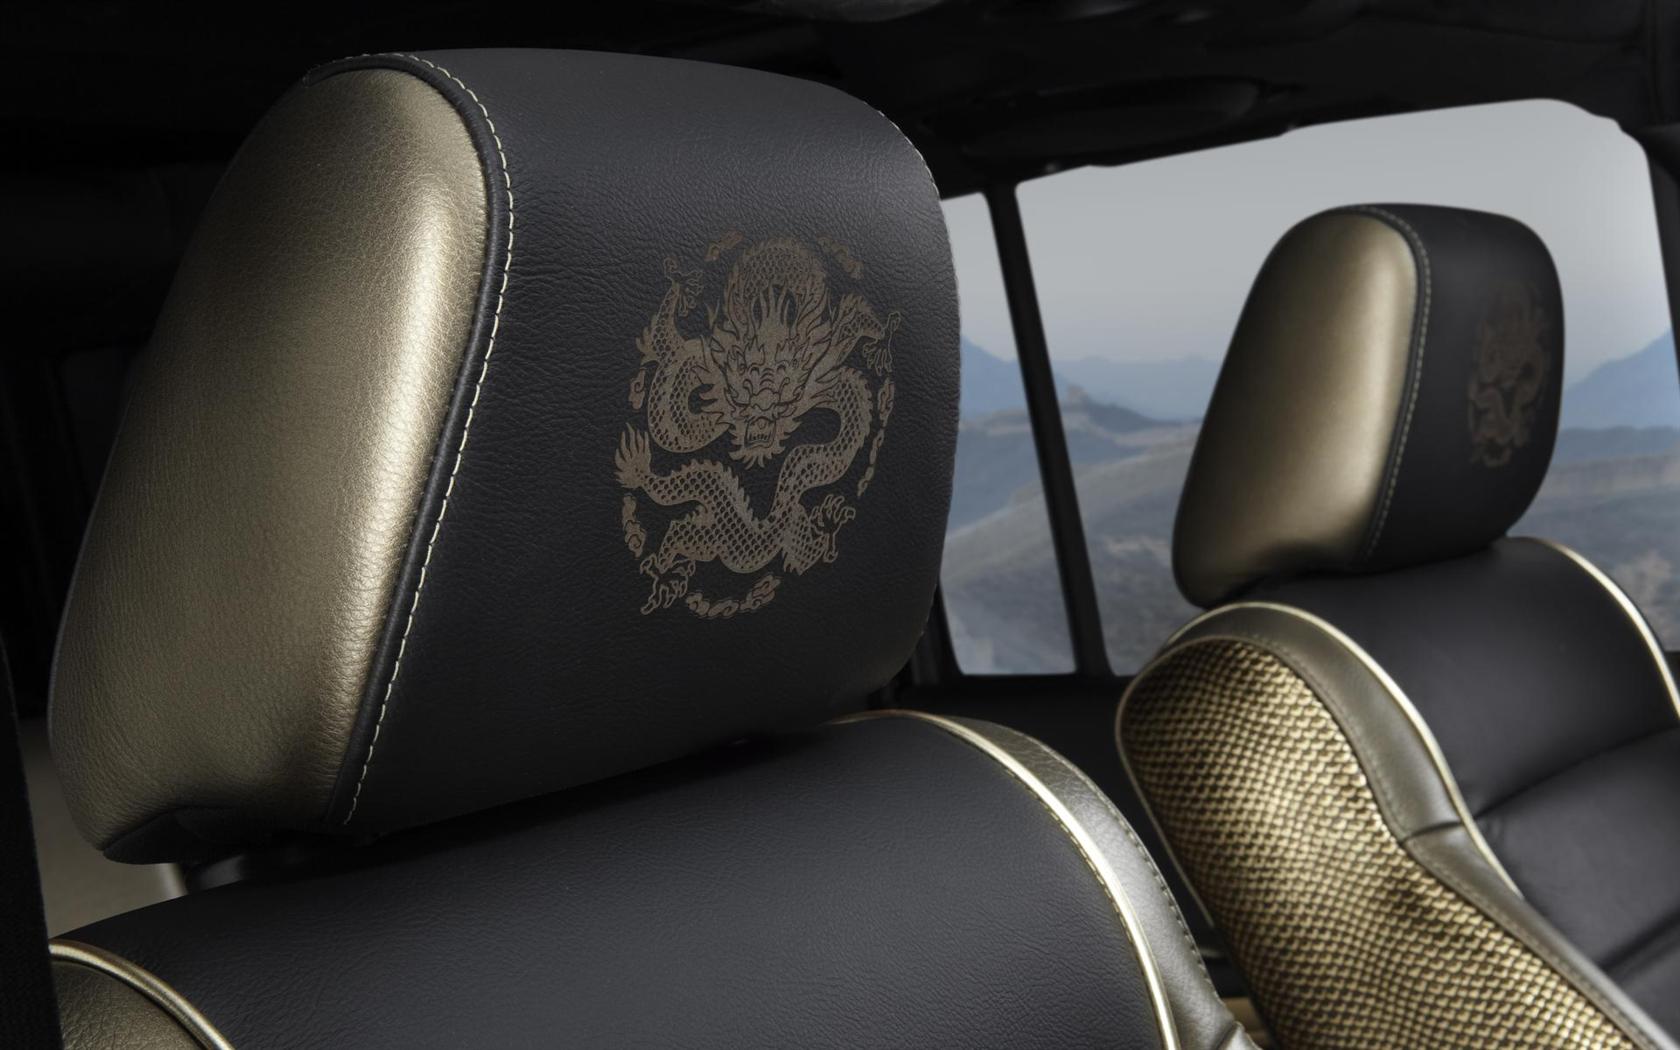 2012 Jeep Wrangler Dragon Design Concept